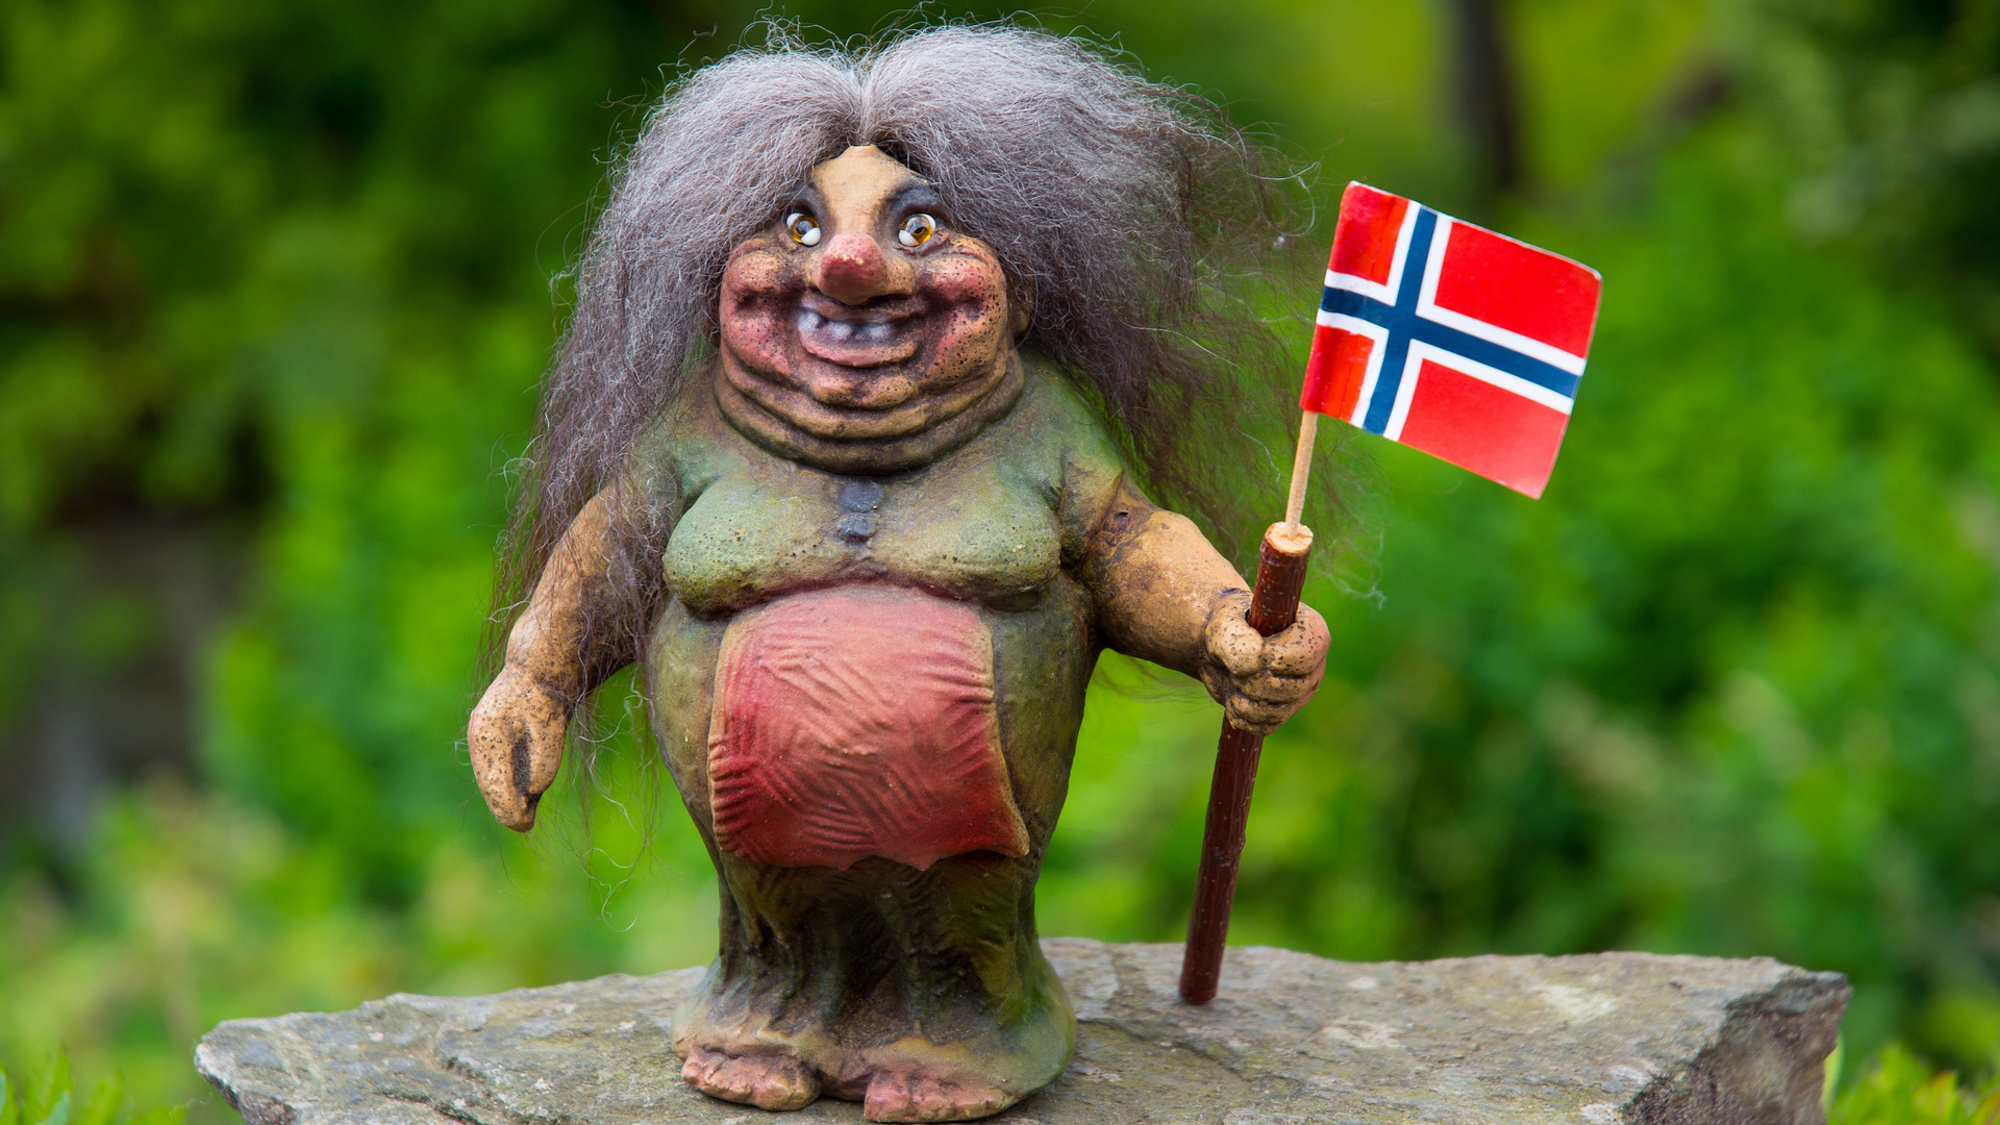 https://pixabay.com/de/photos/norge-norwegen-norwegisch-norse-2467913/